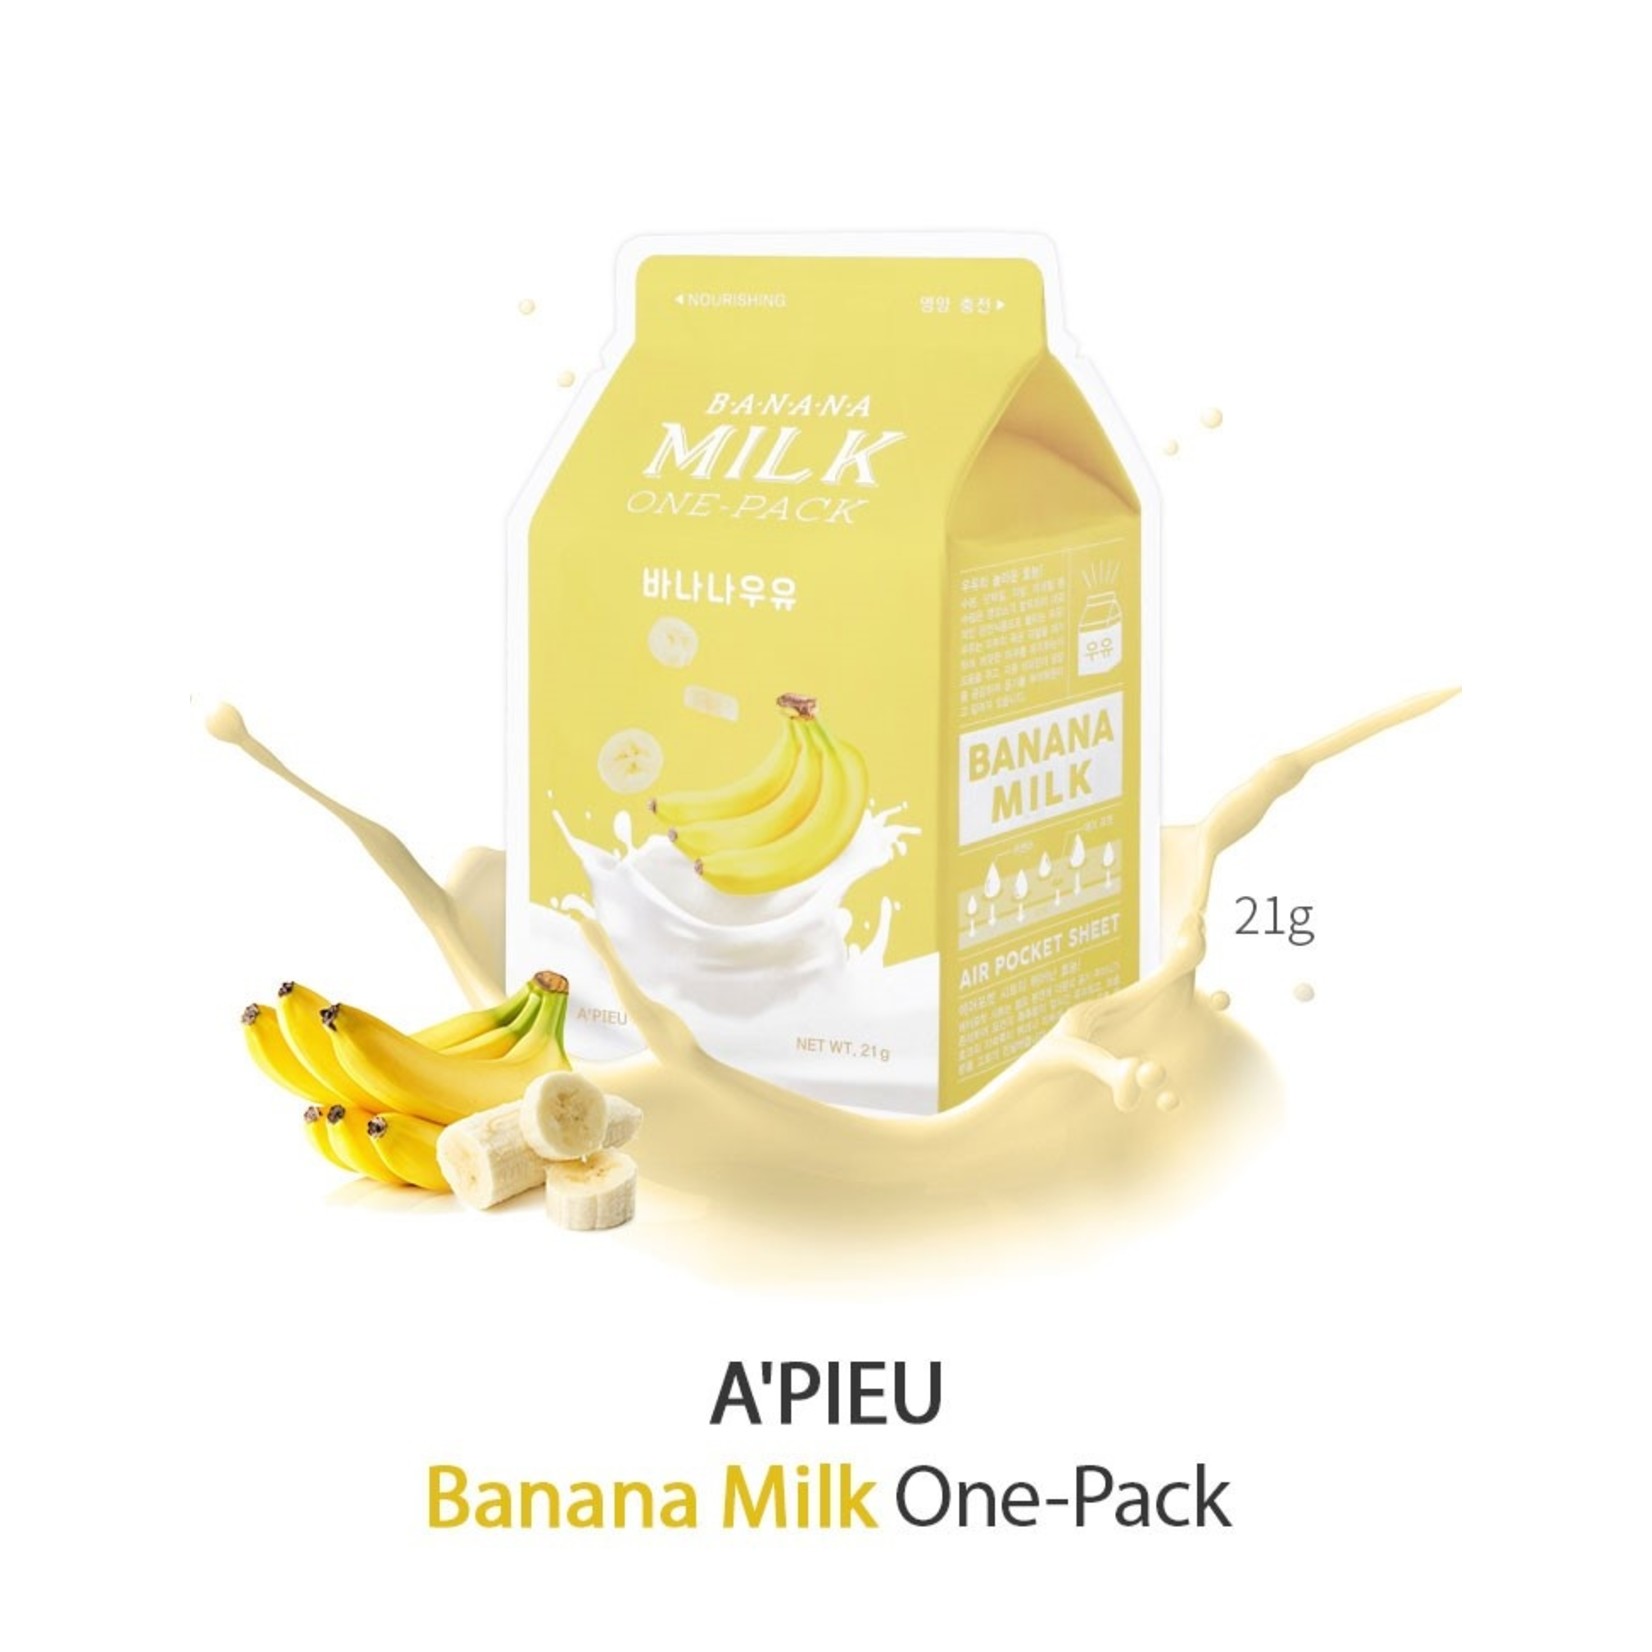 A'PIEU Milk One Pack #Banana Milk